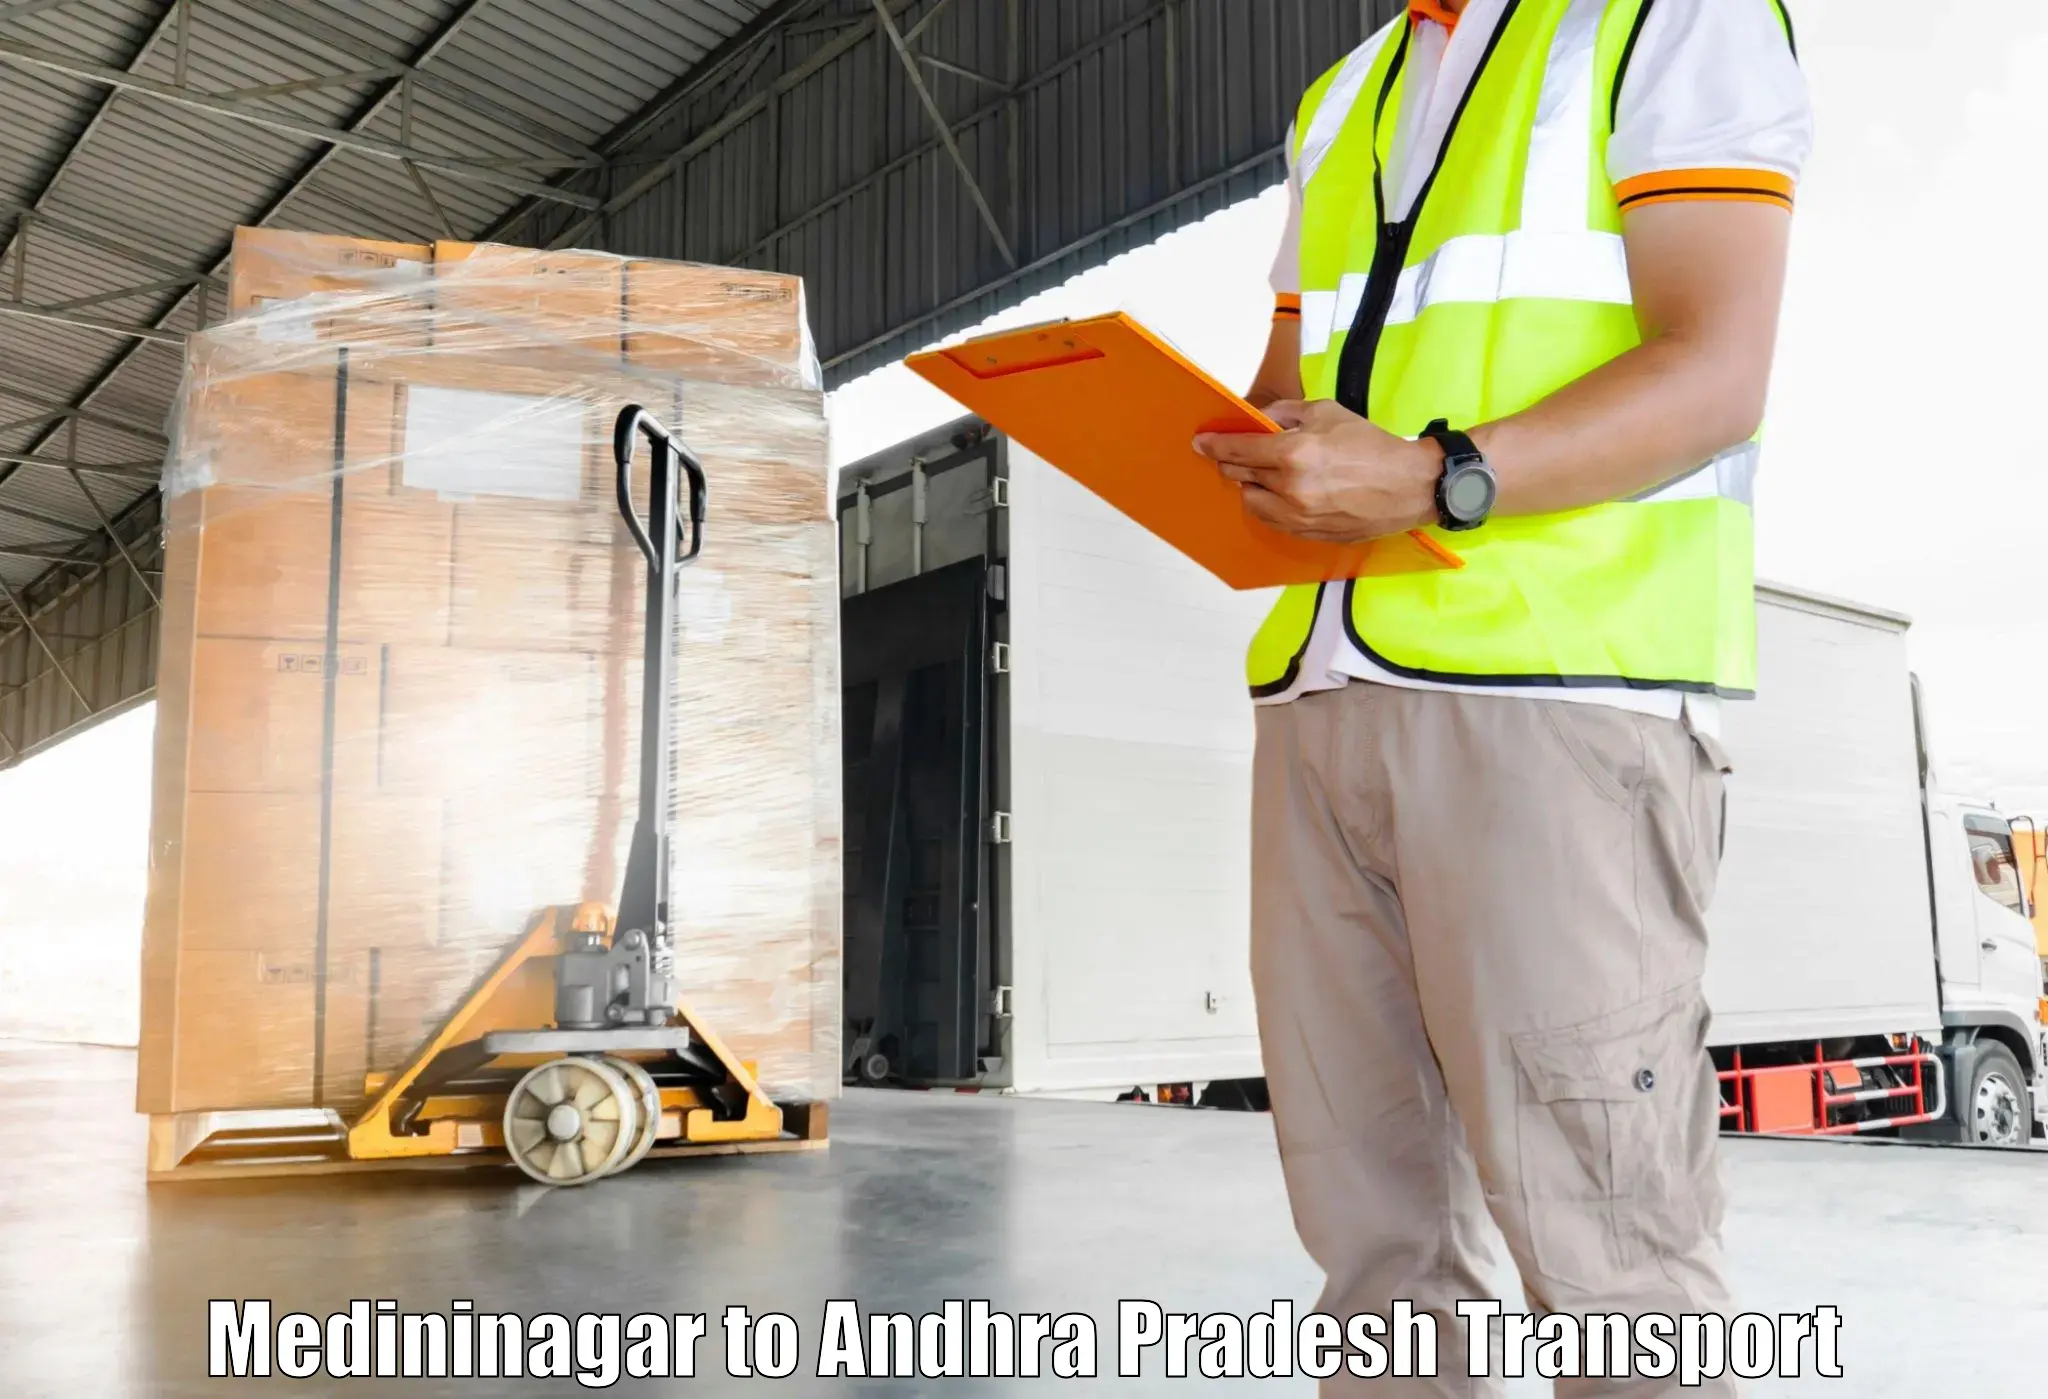 Container transportation services Medininagar to Malikipuram